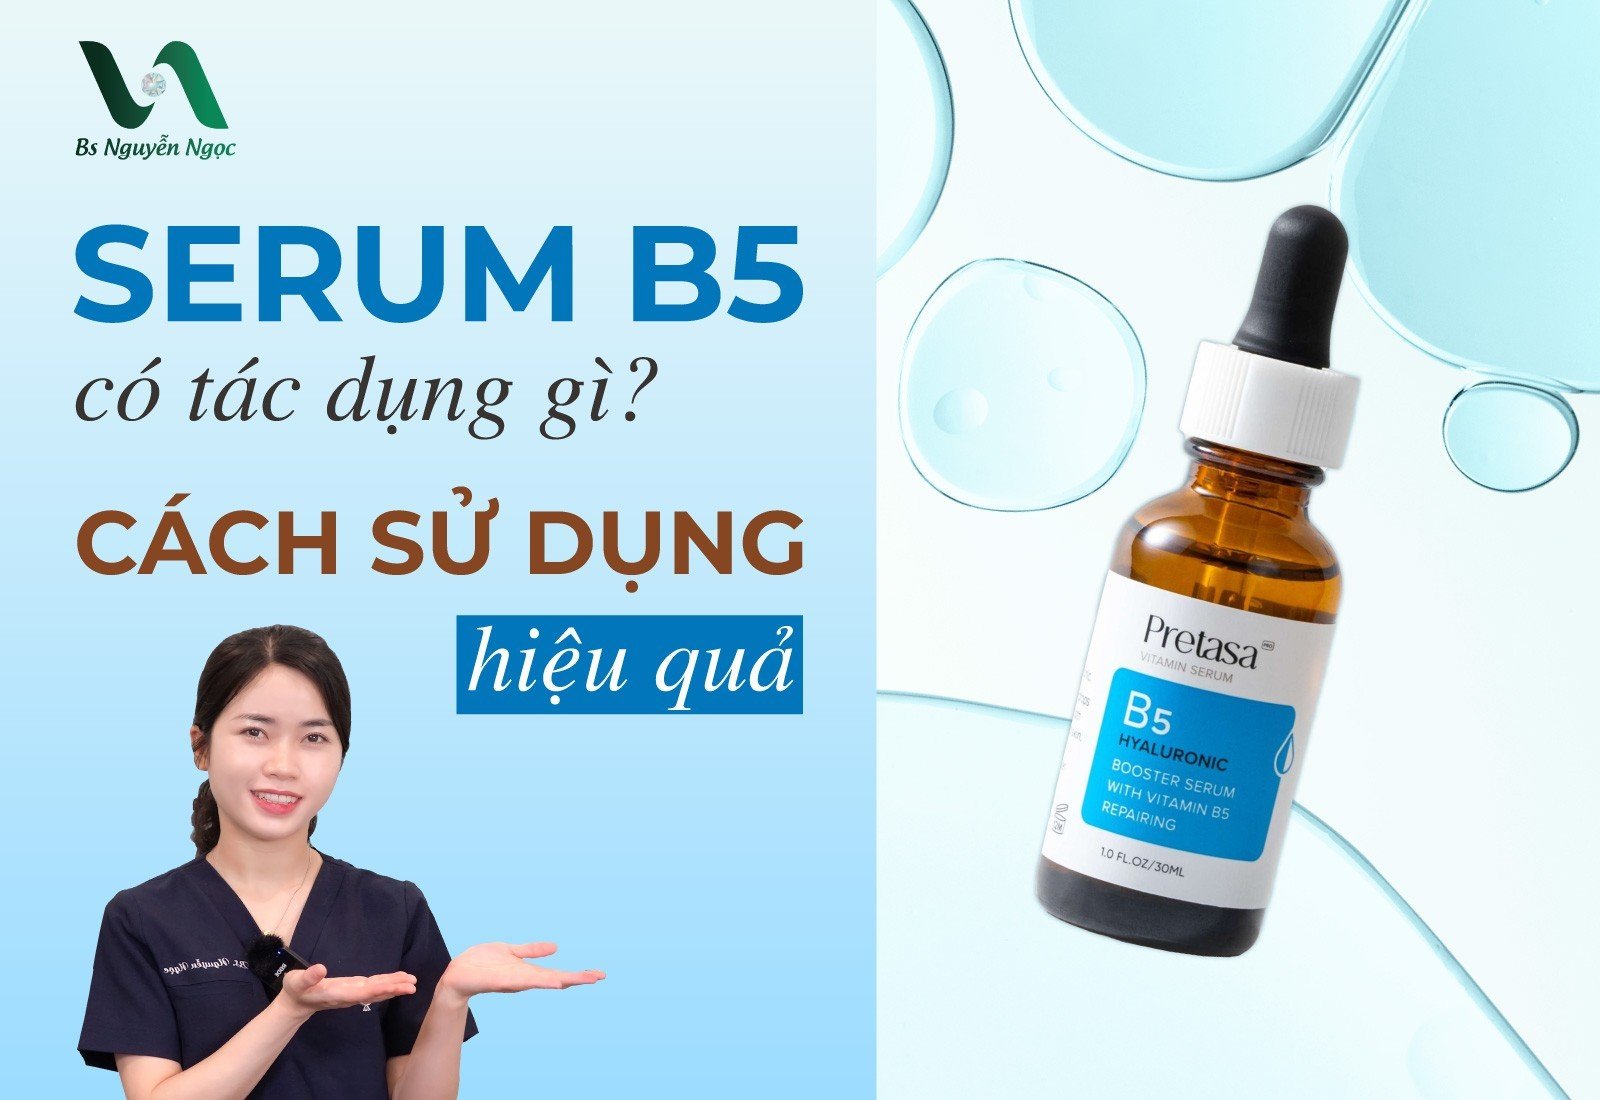 Serum B5 có tác dụng gì? Cách sử dụng hiệu quả